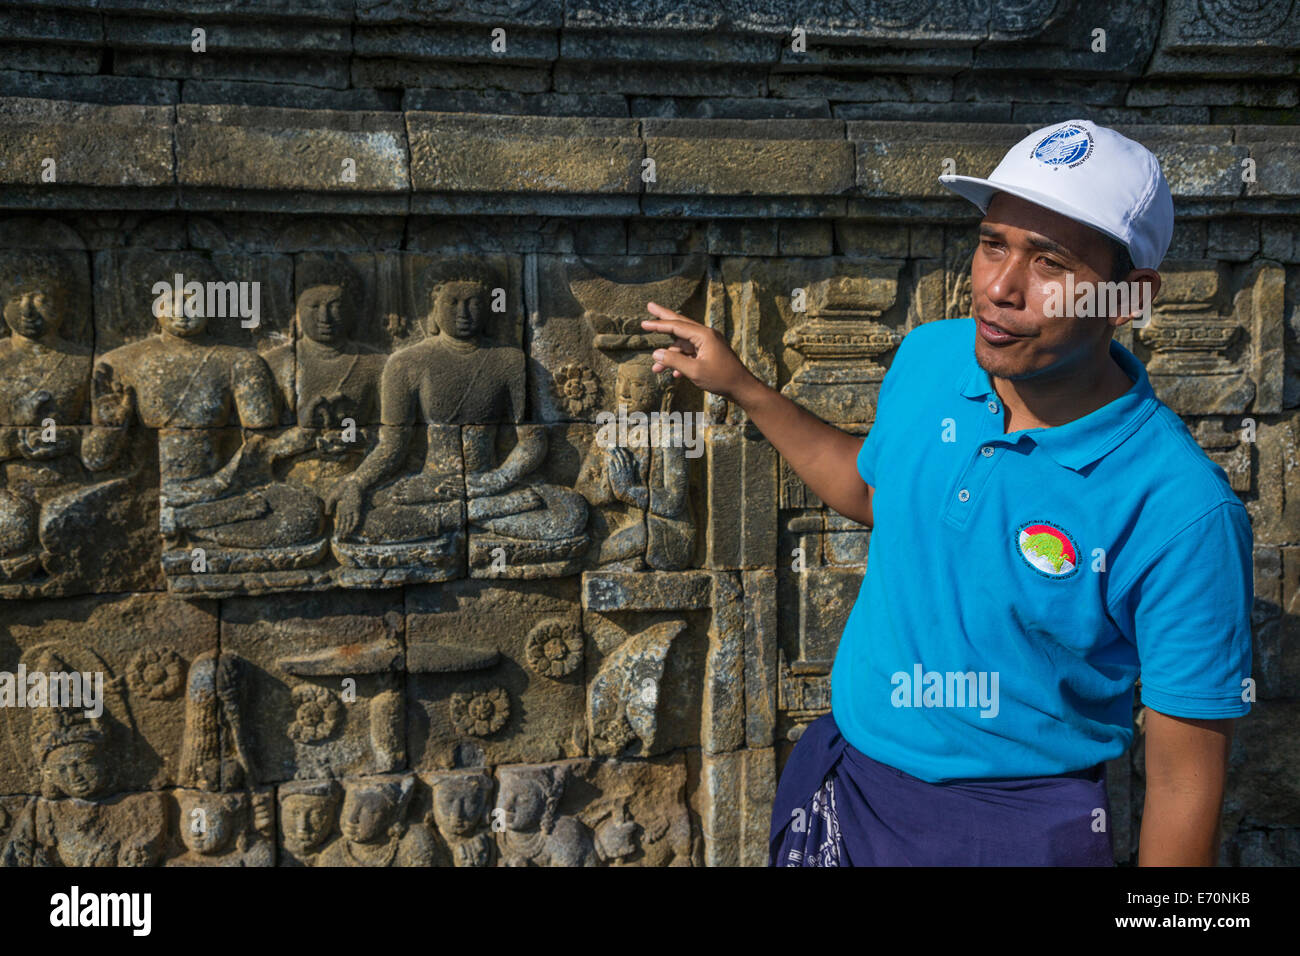 Borobudur, à Java, en Indonésie. Guide de l'Indonésie musulmane expliquant les mudras (gestes) Démontré par le Bouddha dans les sculptures murales. Banque D'Images